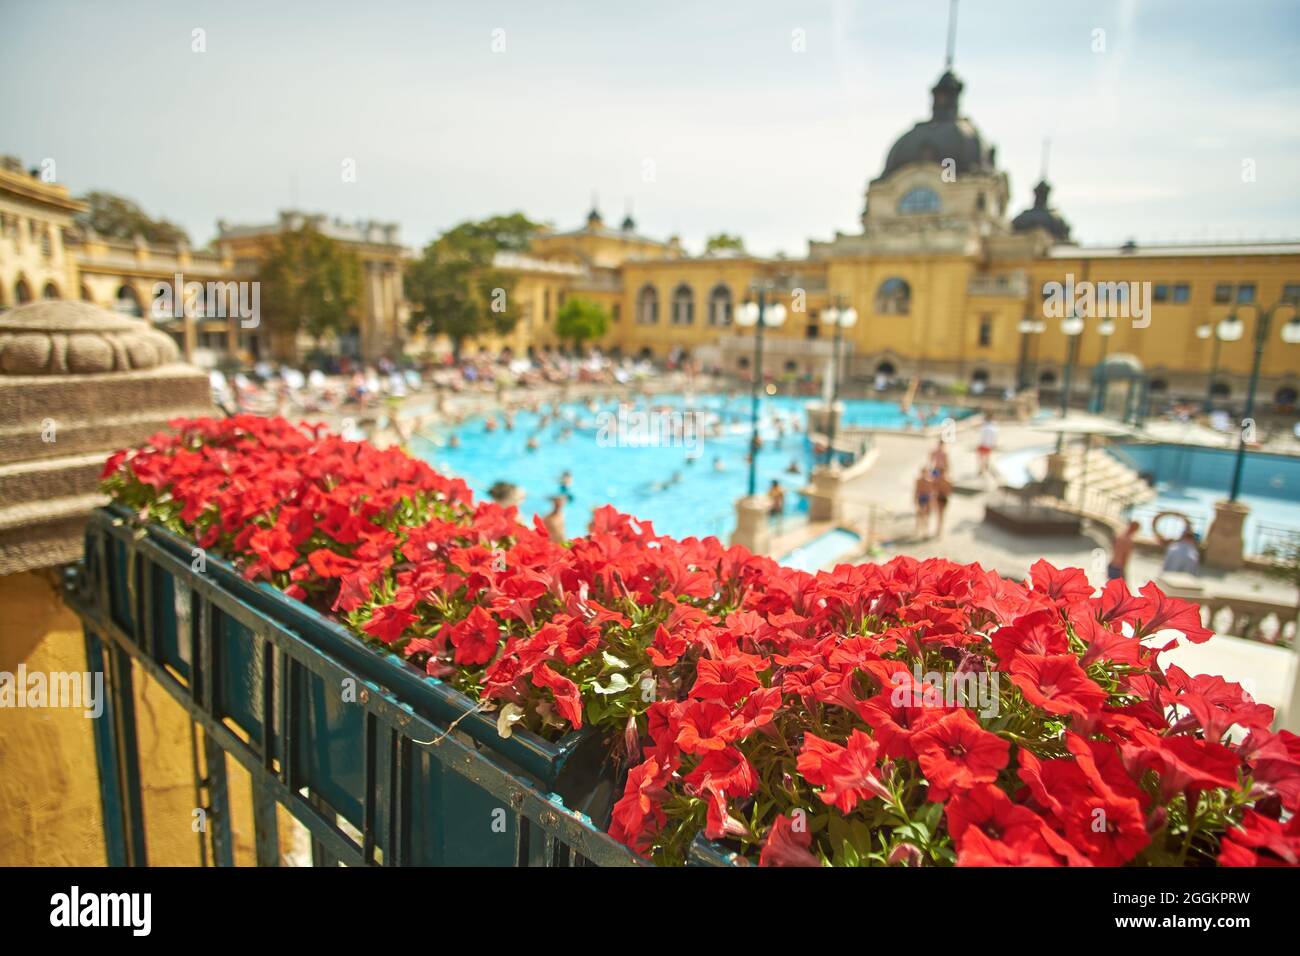 Budapest, Hongrie. 01 août 2021 : bains de Szechenyi à Budapest, Hongrie. Banque D'Images